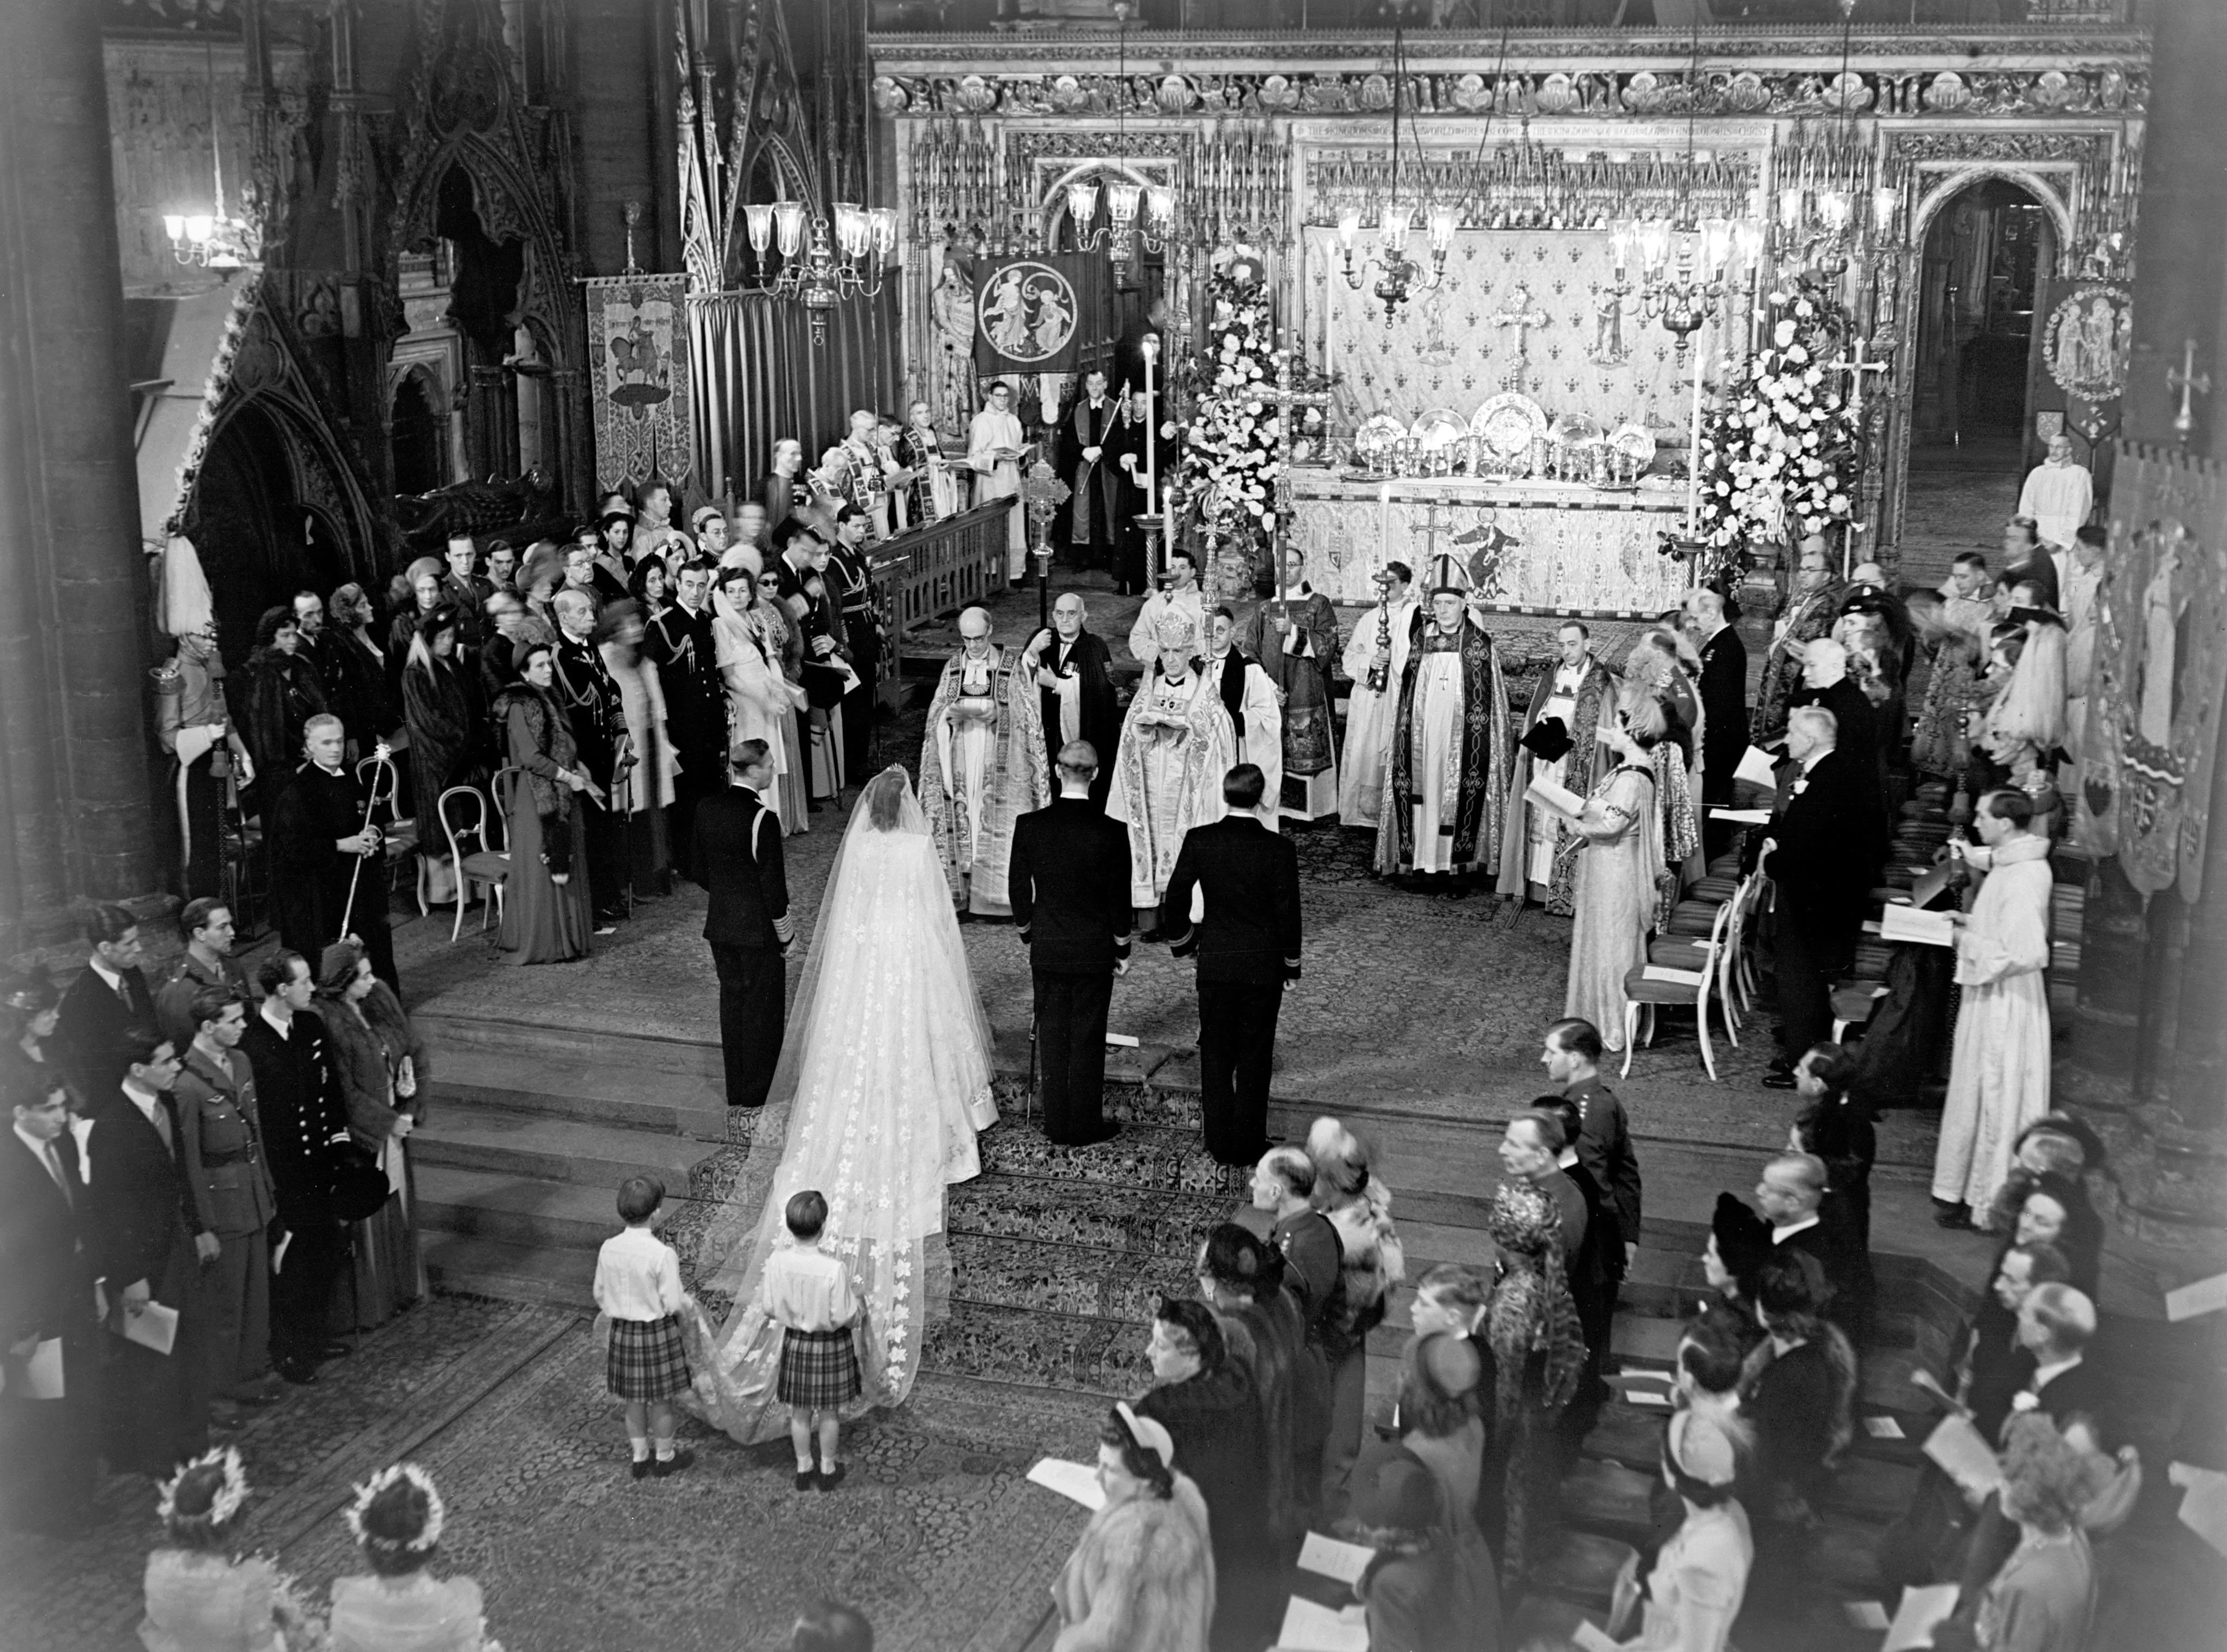 صور حفل زفاف الملكة إليزابيث من الأمير فيليب... ومعلومات ربما لا تعرفينها